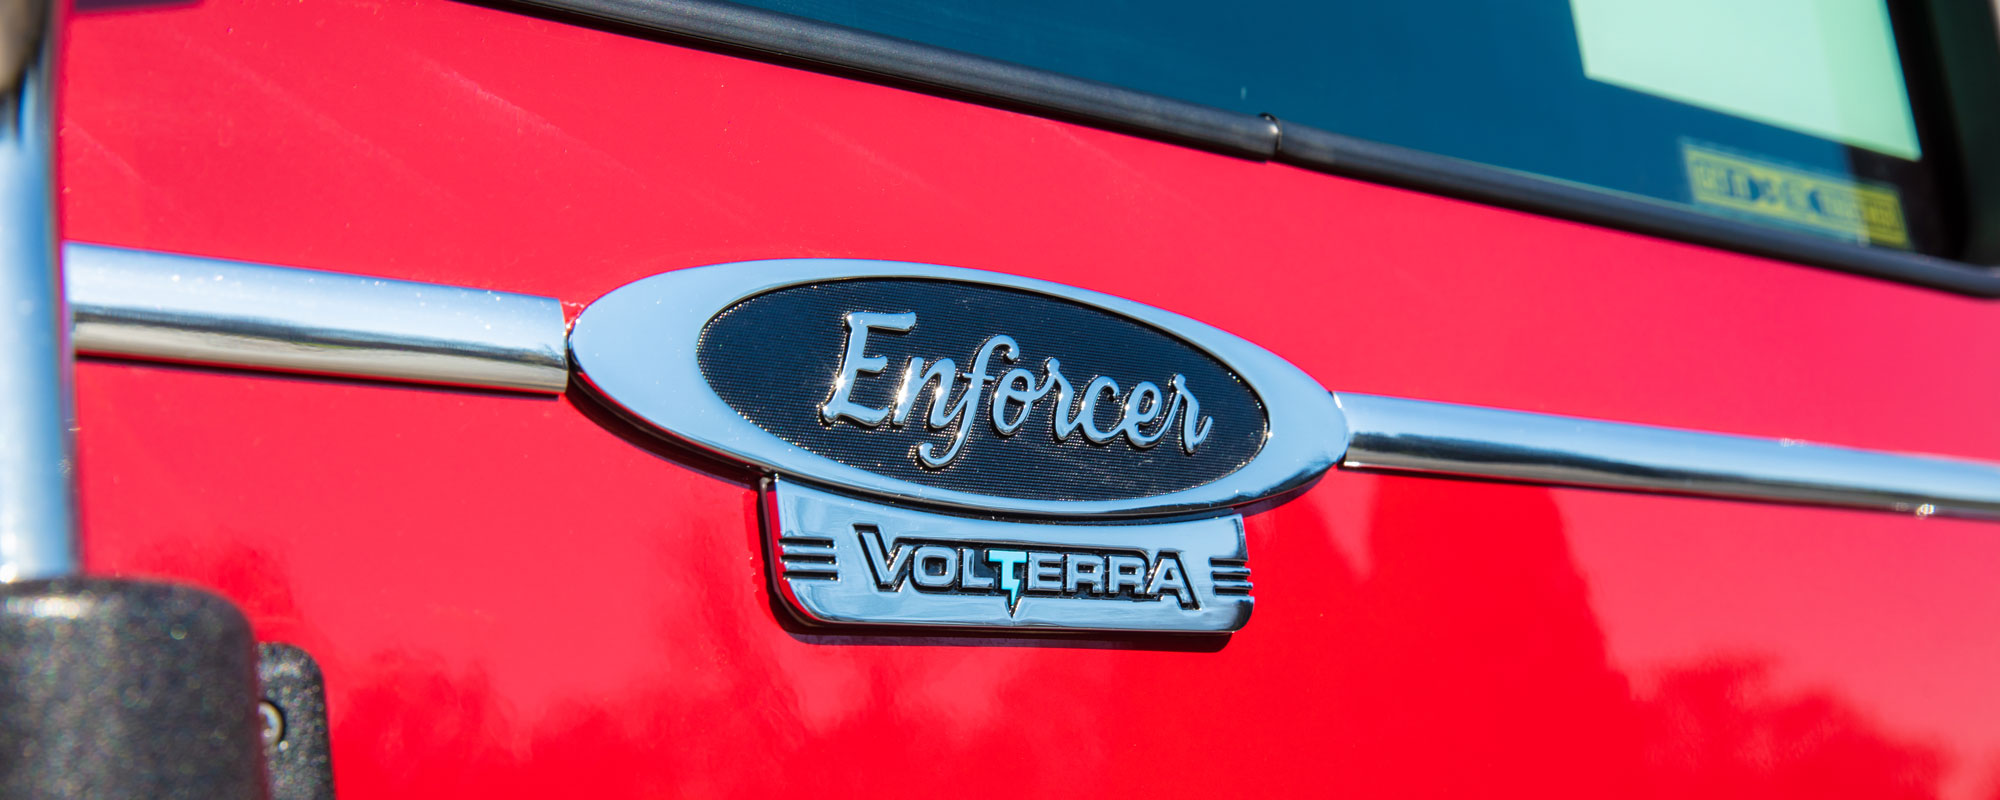 Enforcer Volterra Platform of Electric Vehicles